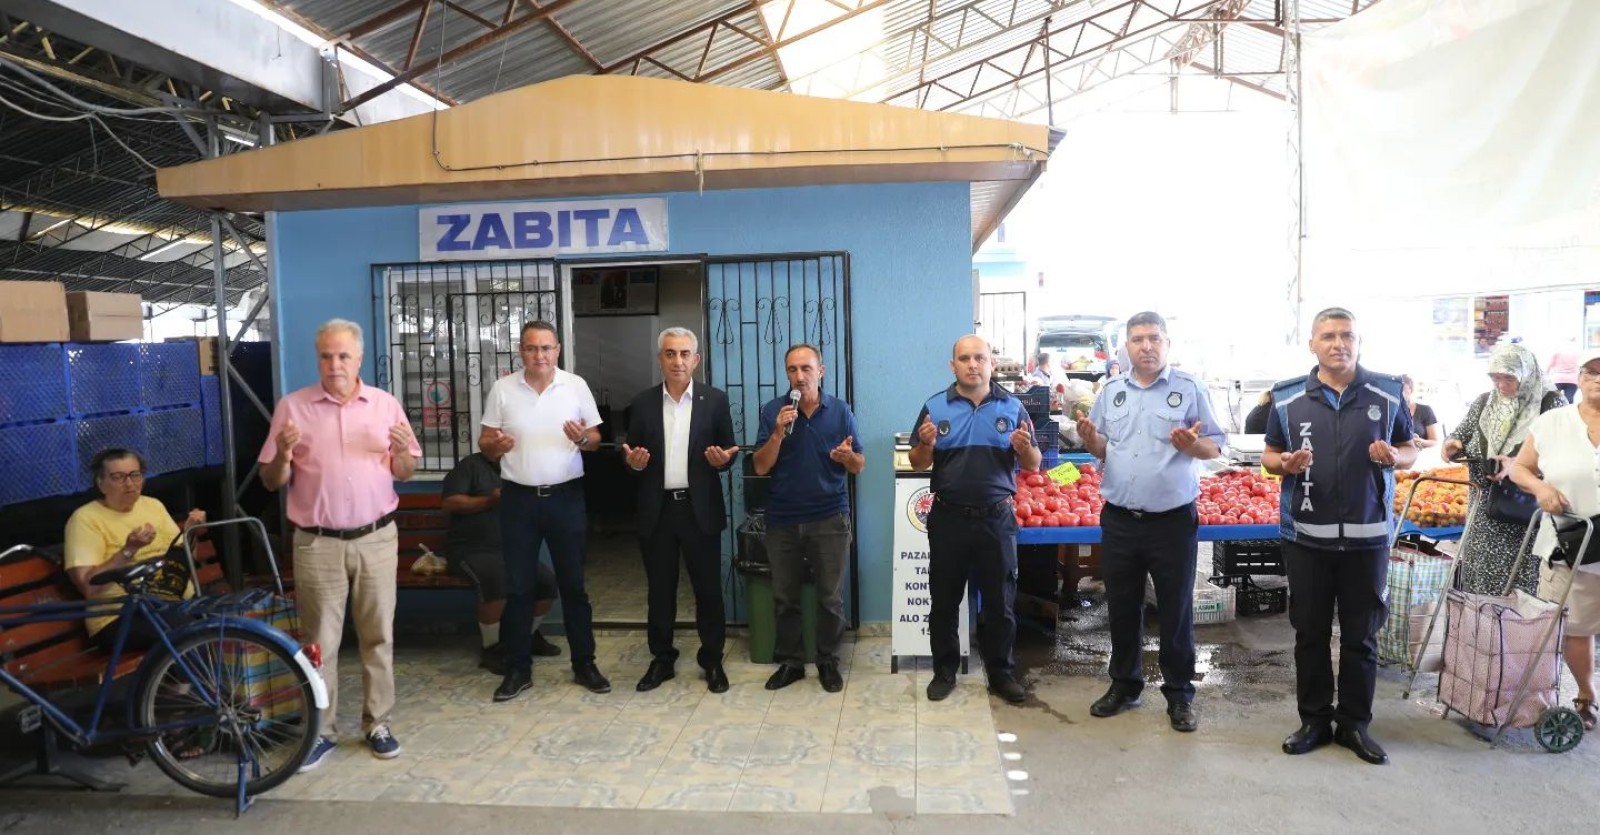 Belediye Başkanımız Muhammet Karakuş pazar duasına katılarak, pazaryerindeki esnaflarımıza hayırlı kazançlar dileklerinde bulundu.